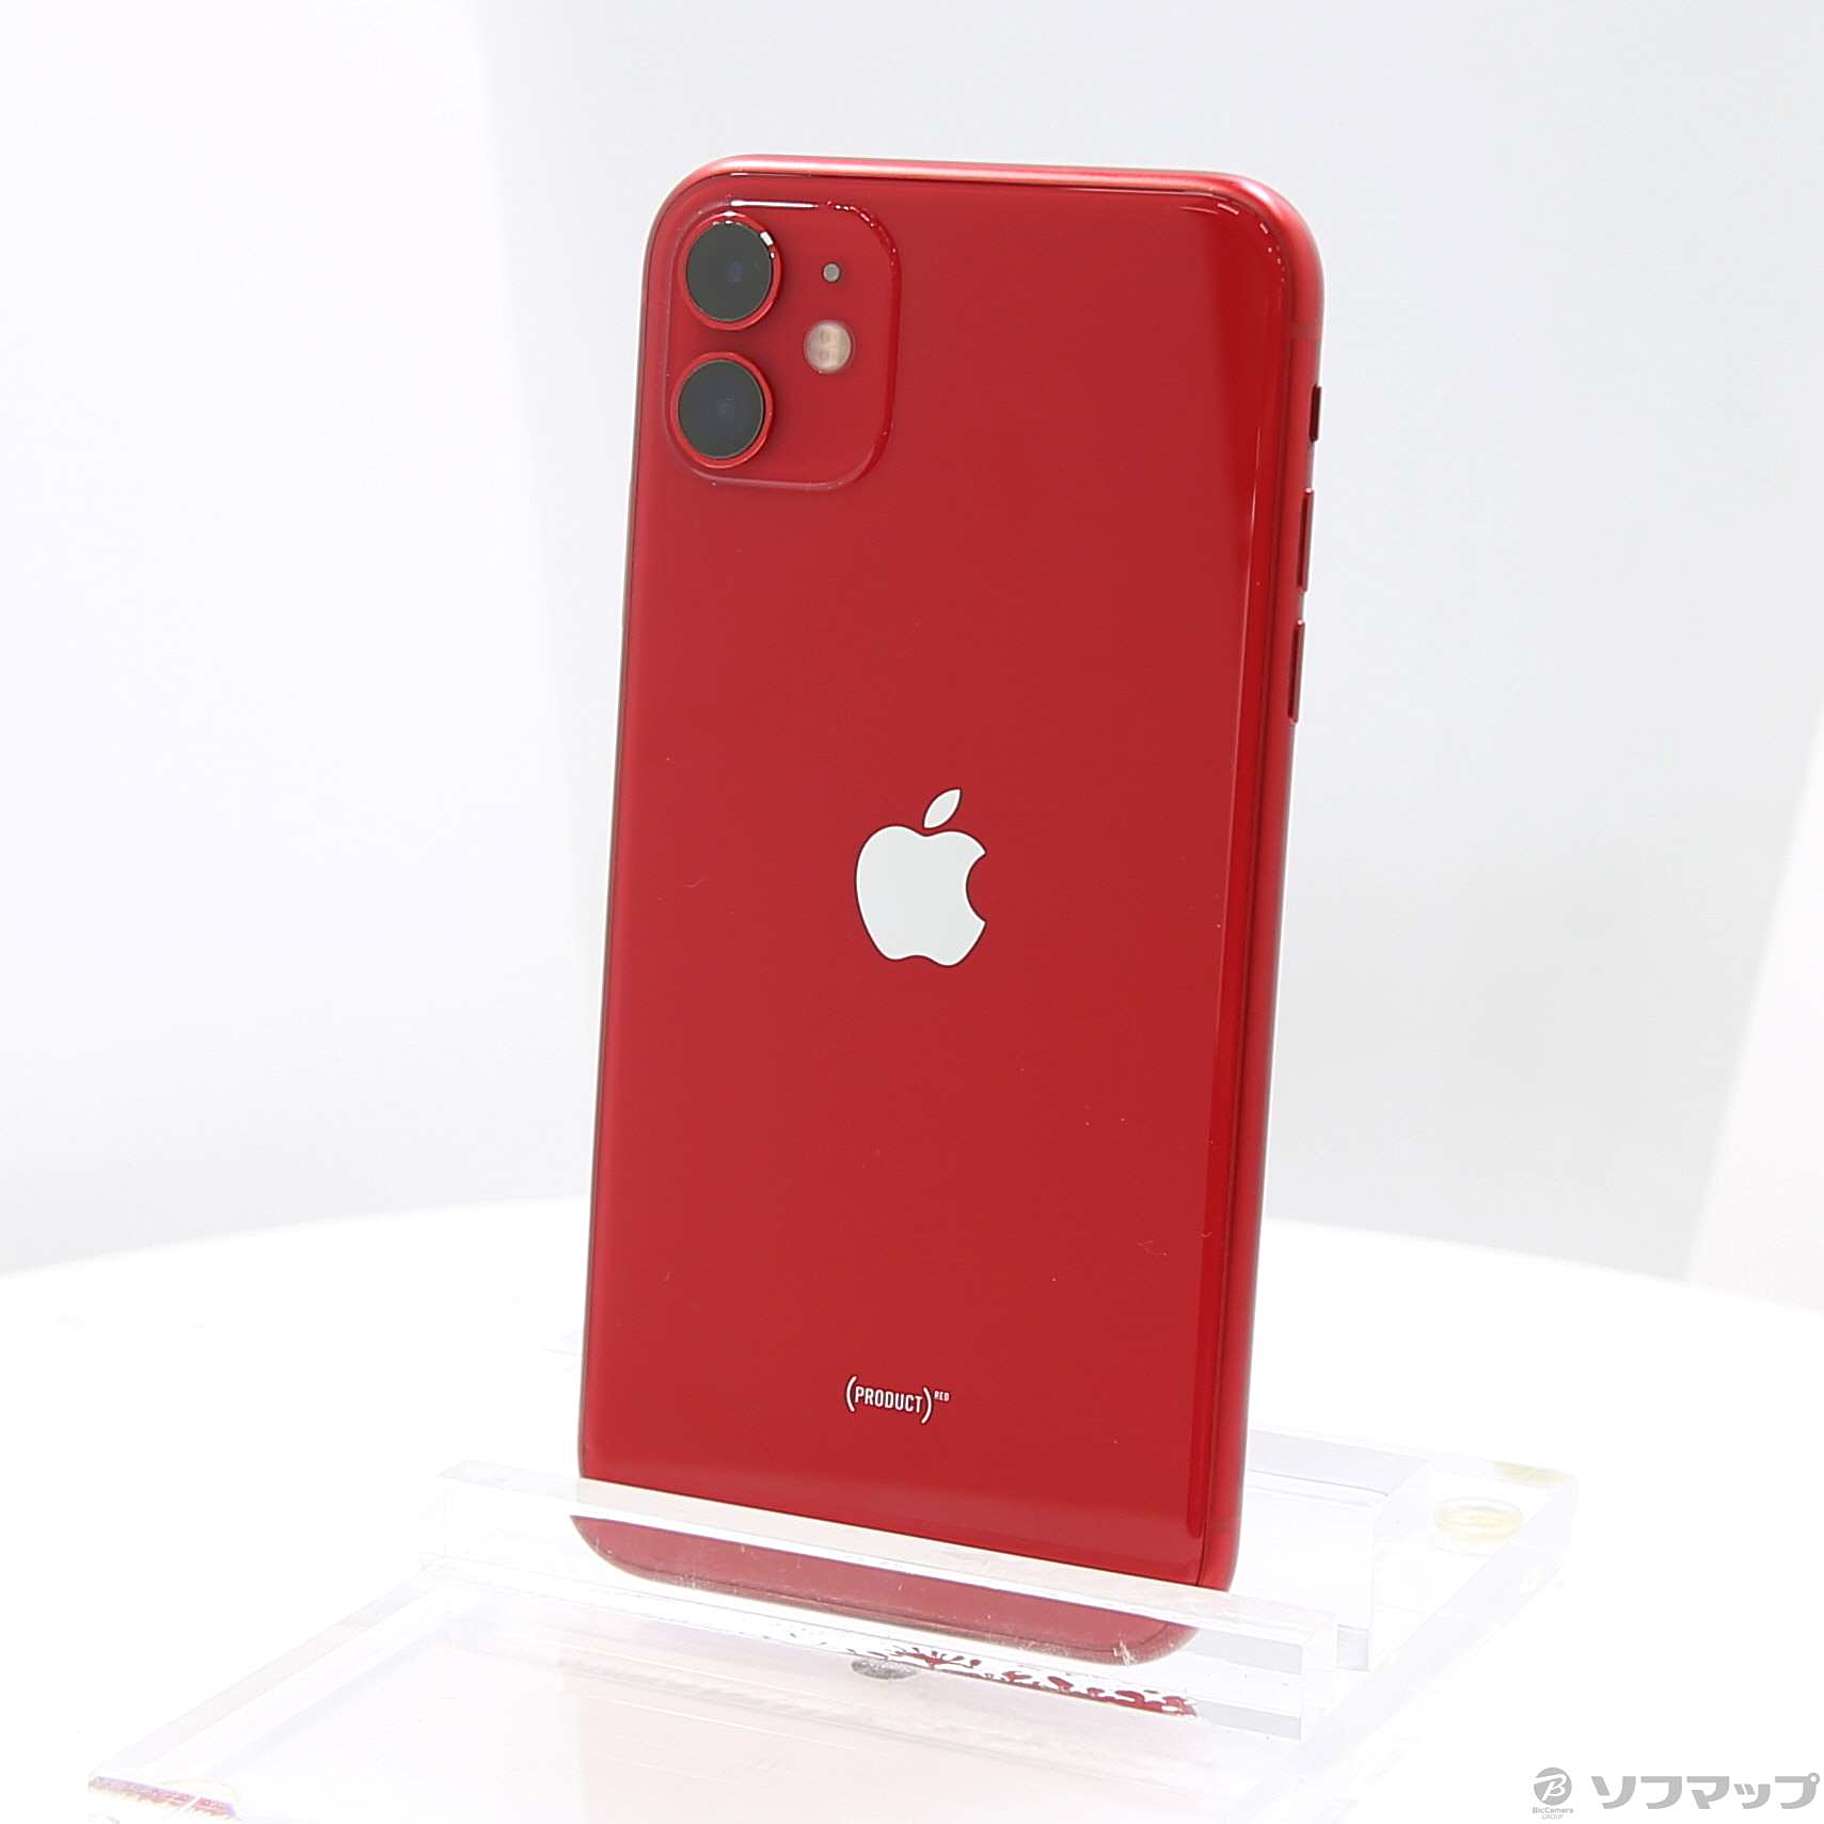 スマートフォン/携帯電話iPhone 11 product RED 128GB SIMフリー - www